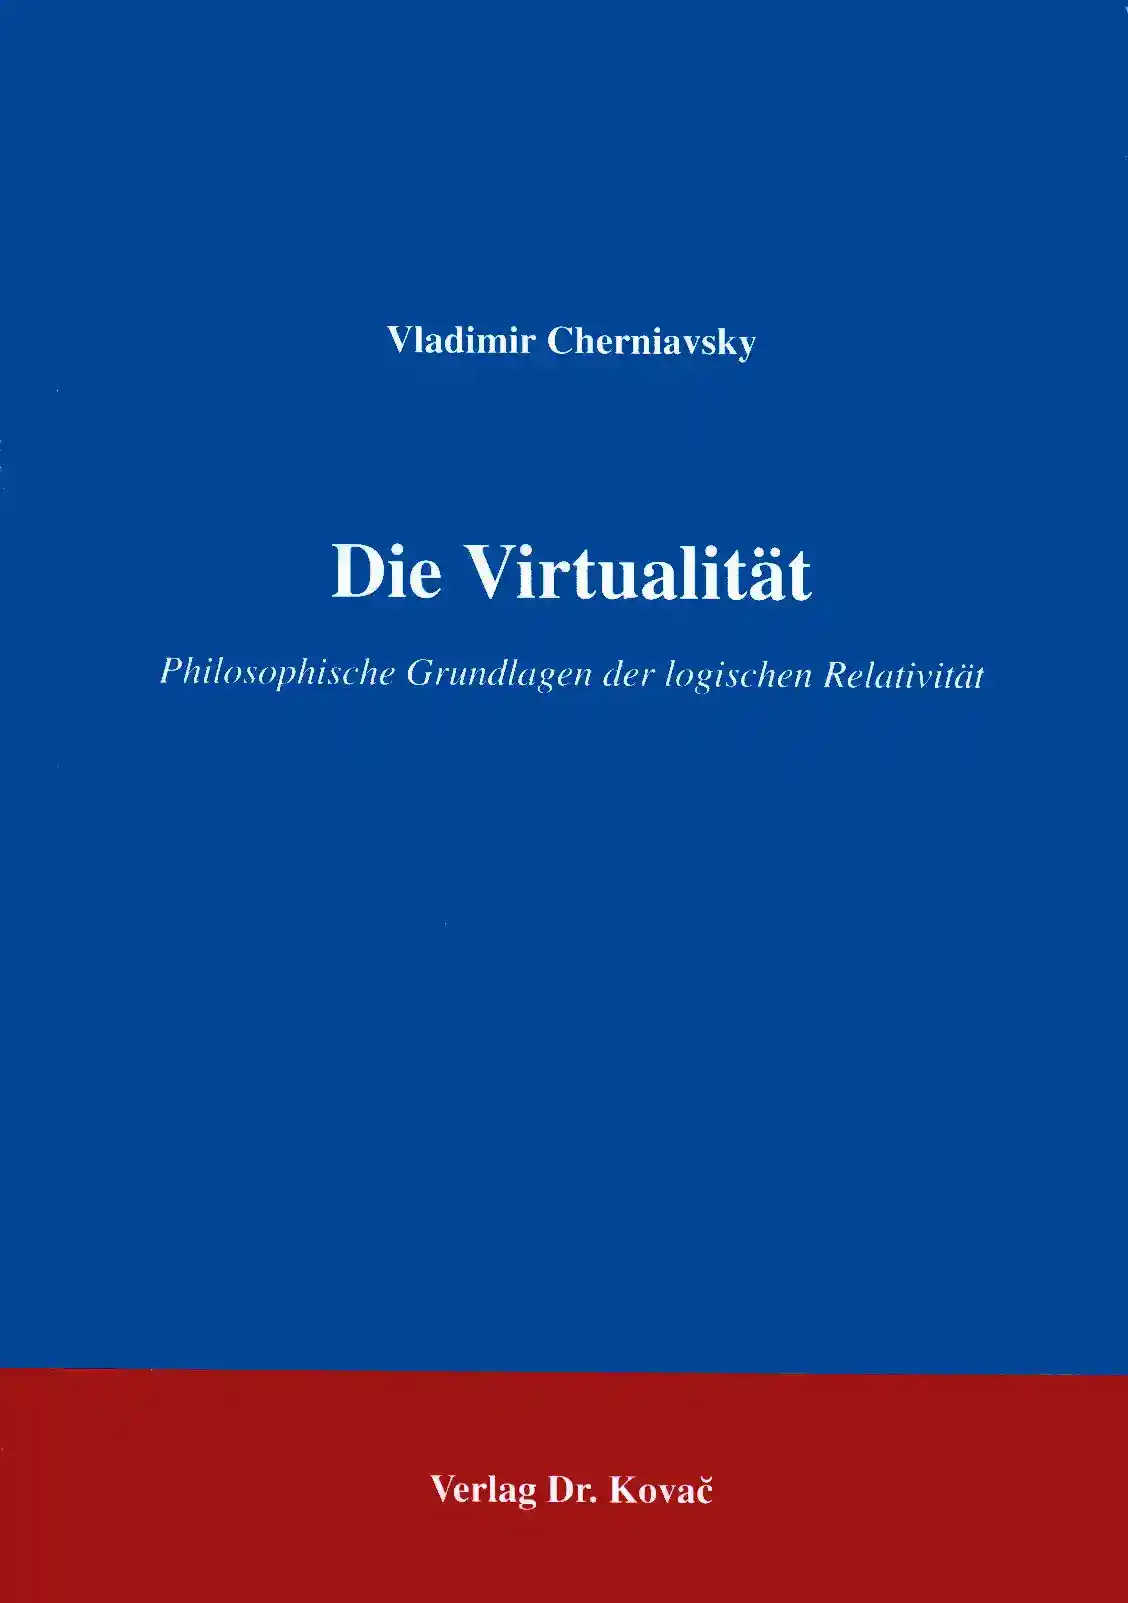 Die Virtualität (Forschungsarbeit)